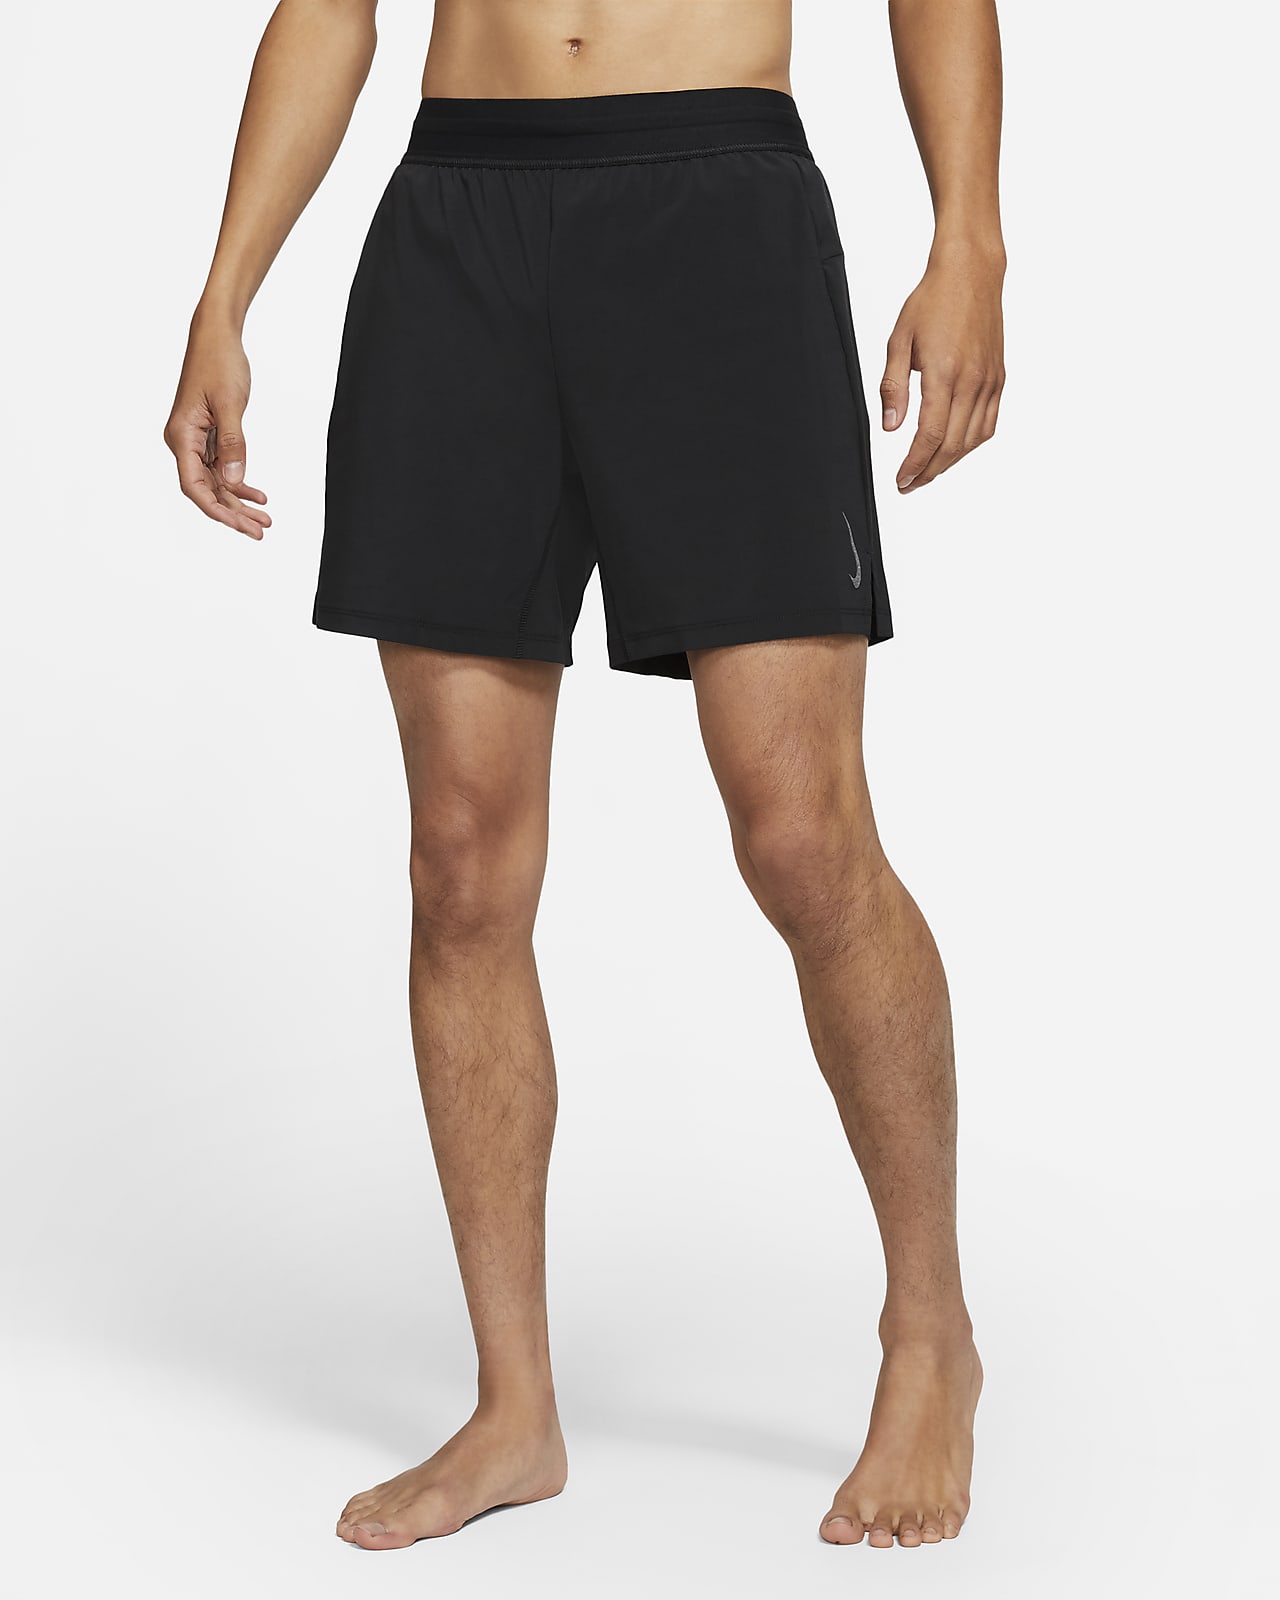 Nike 男款 2-in-1 短褲